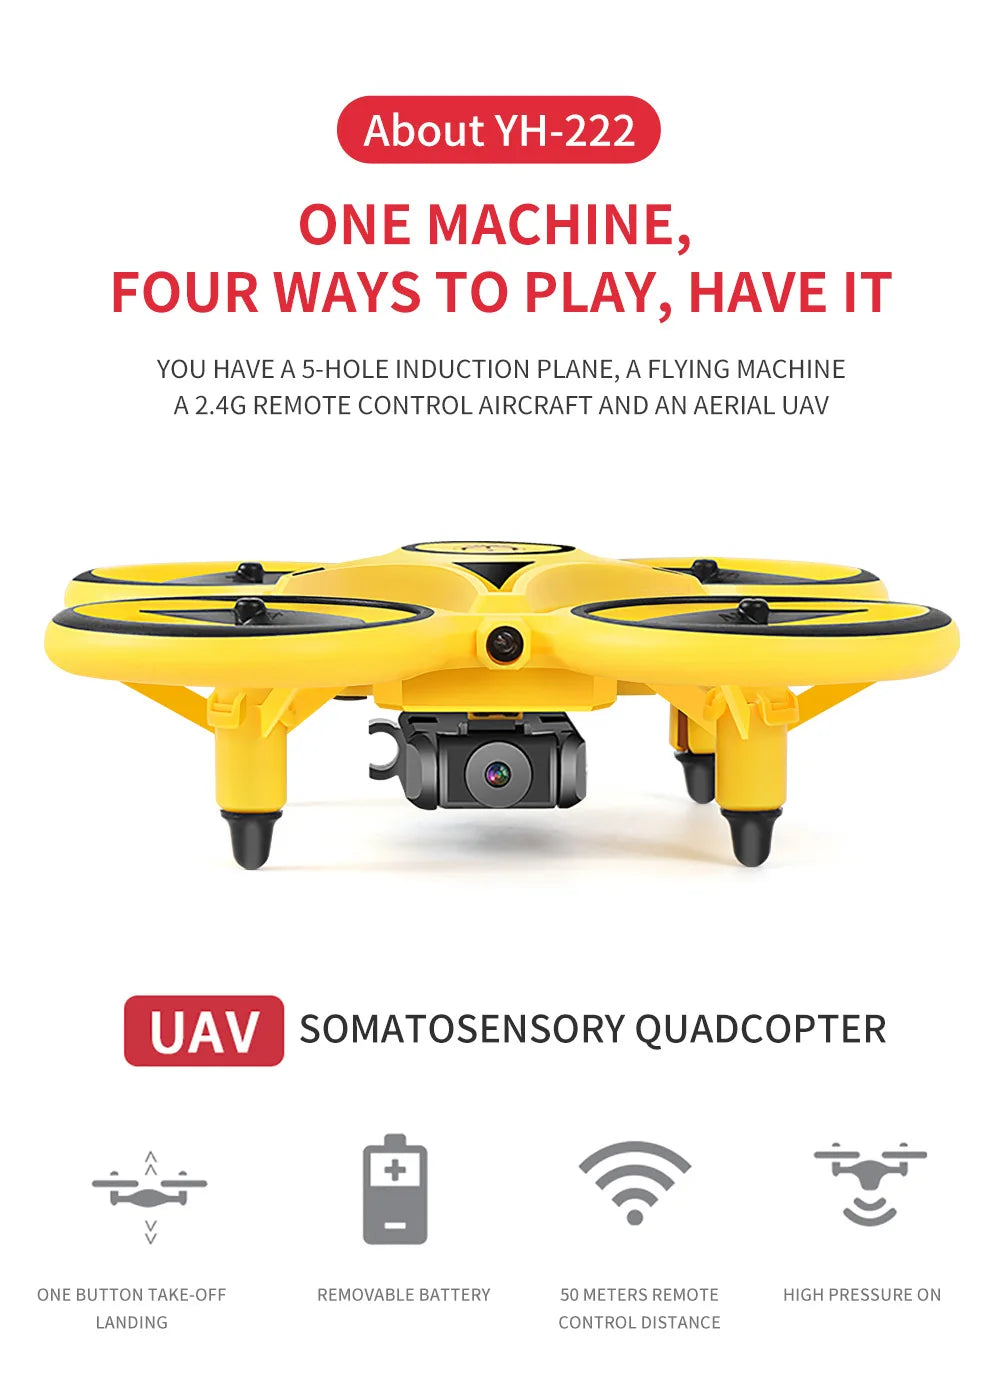 HGRC 2.4G Mini Watch RC Drone, YH-222 ONE MACHINE, FOUR WAYS TO PLAY